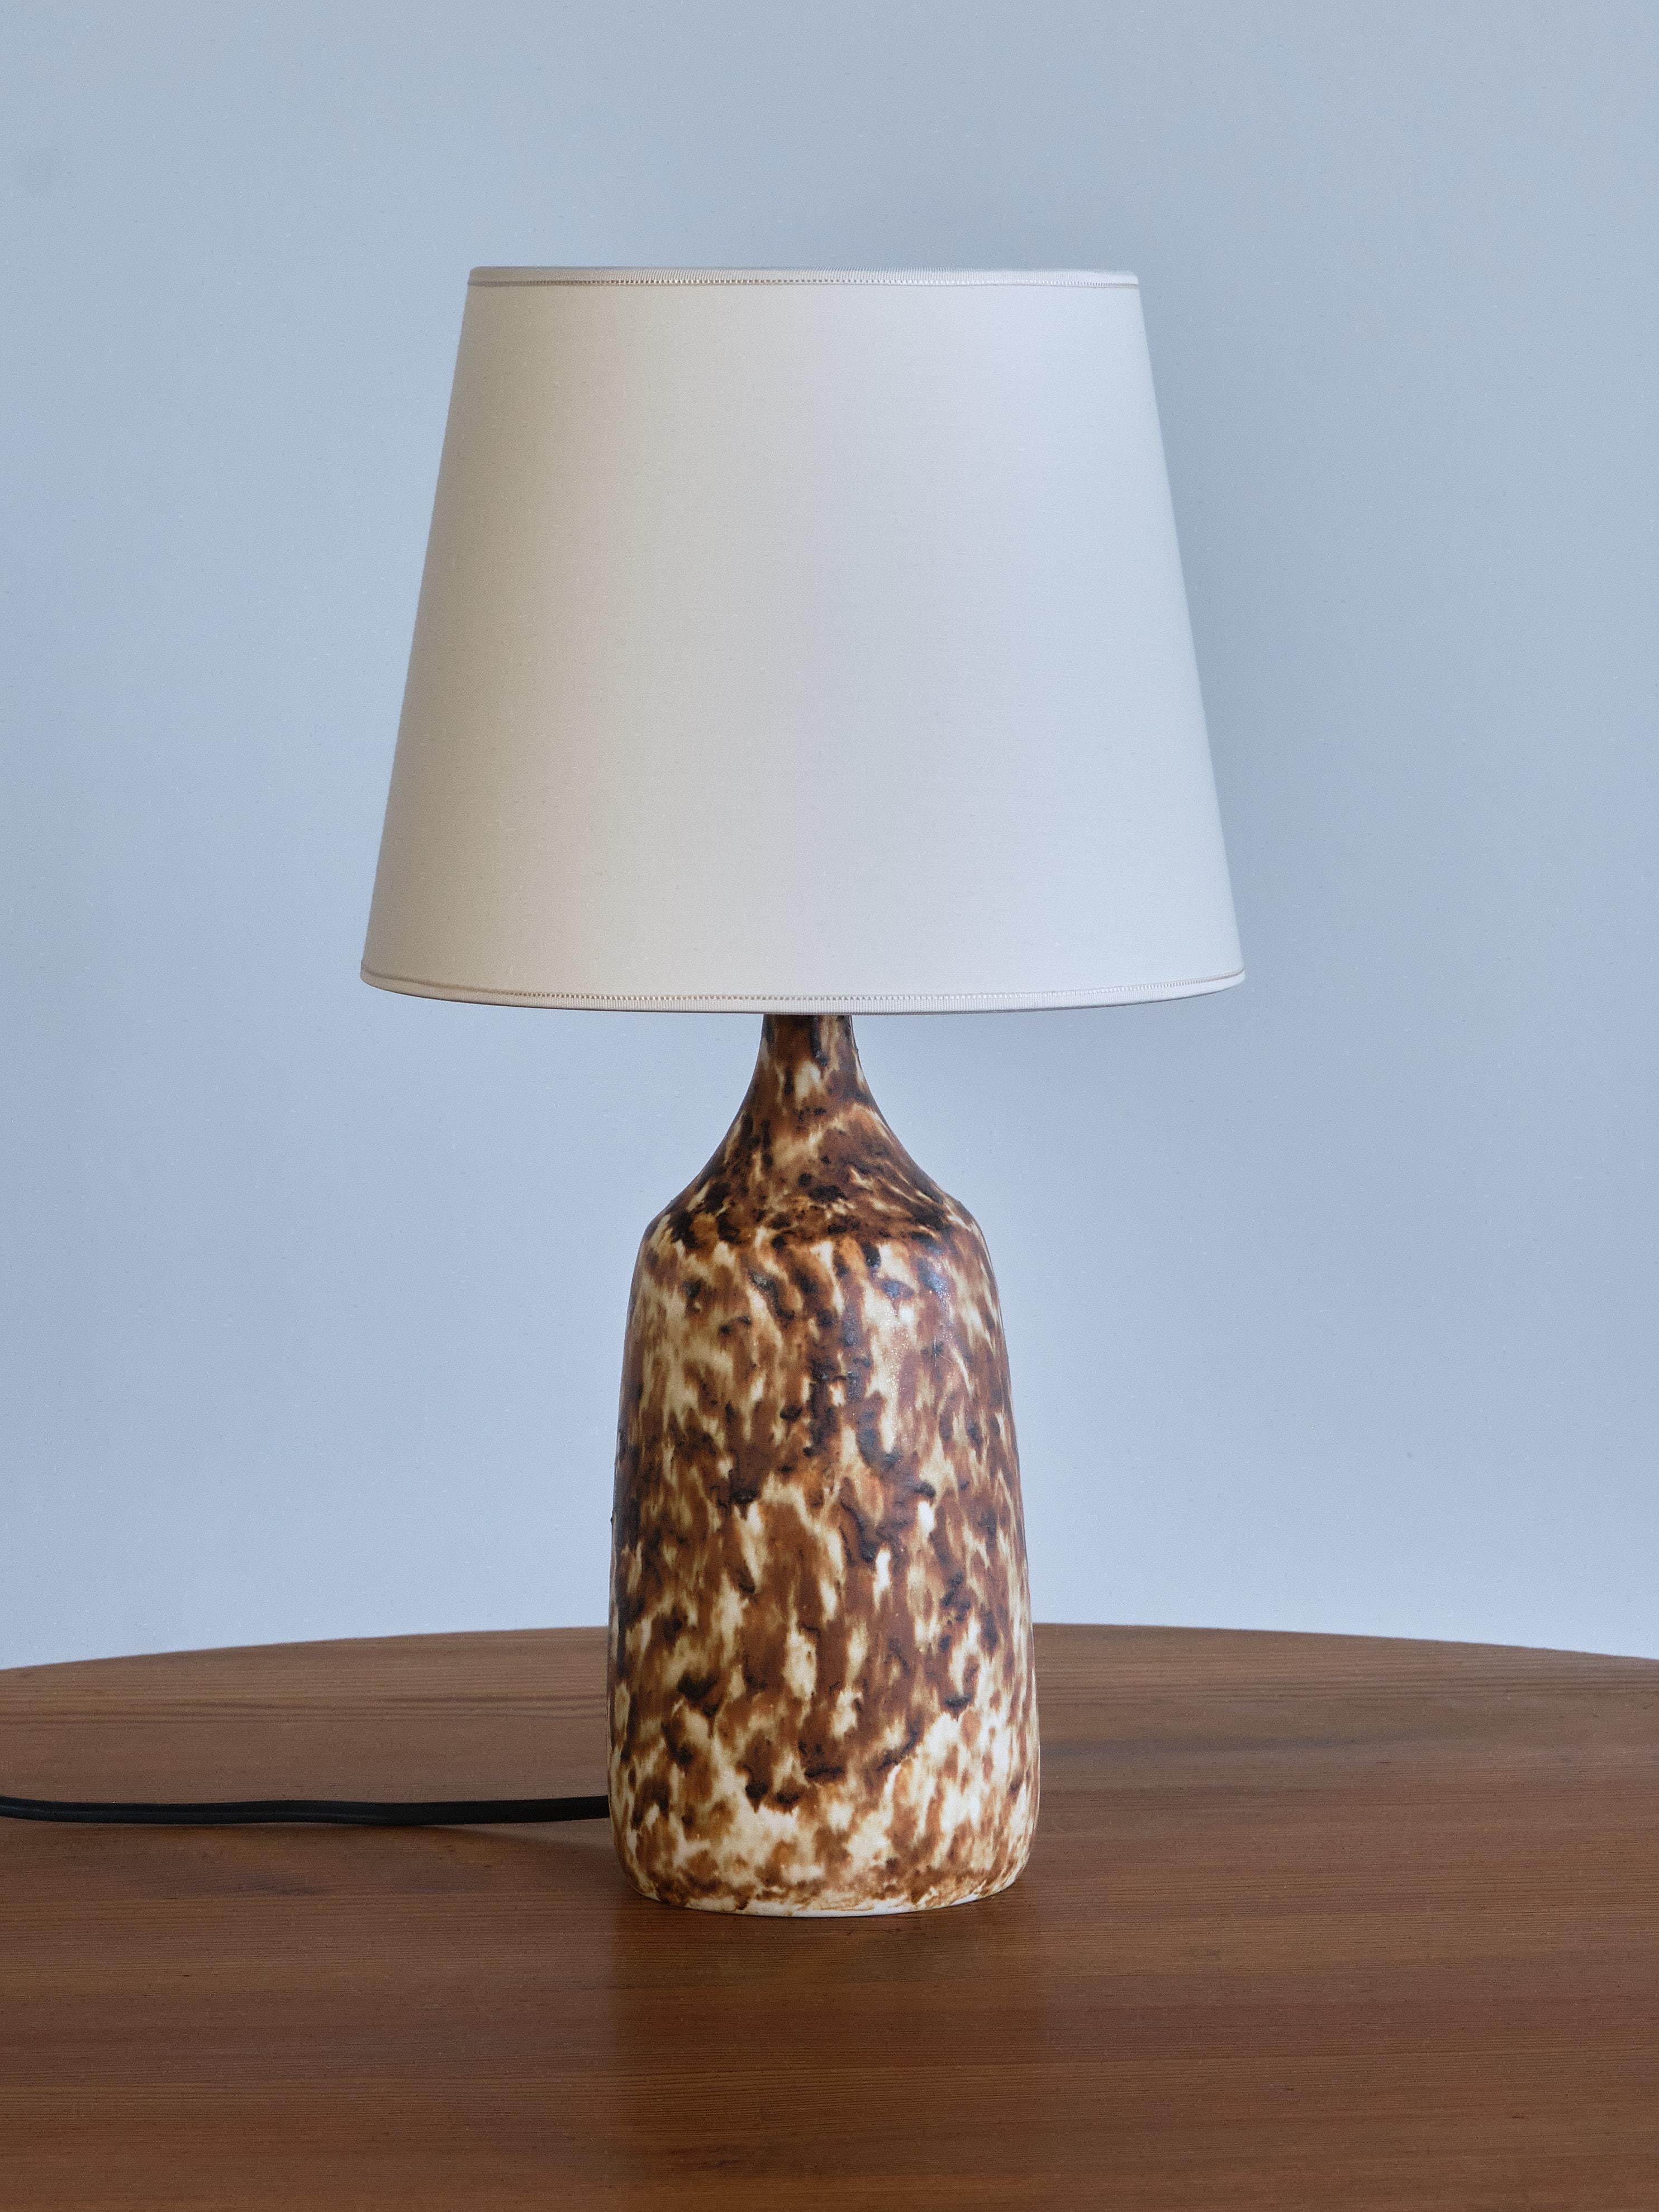 Cette lampe de table rare a été conçue par Gunnar Borg et produite par son propre atelier de céramique 